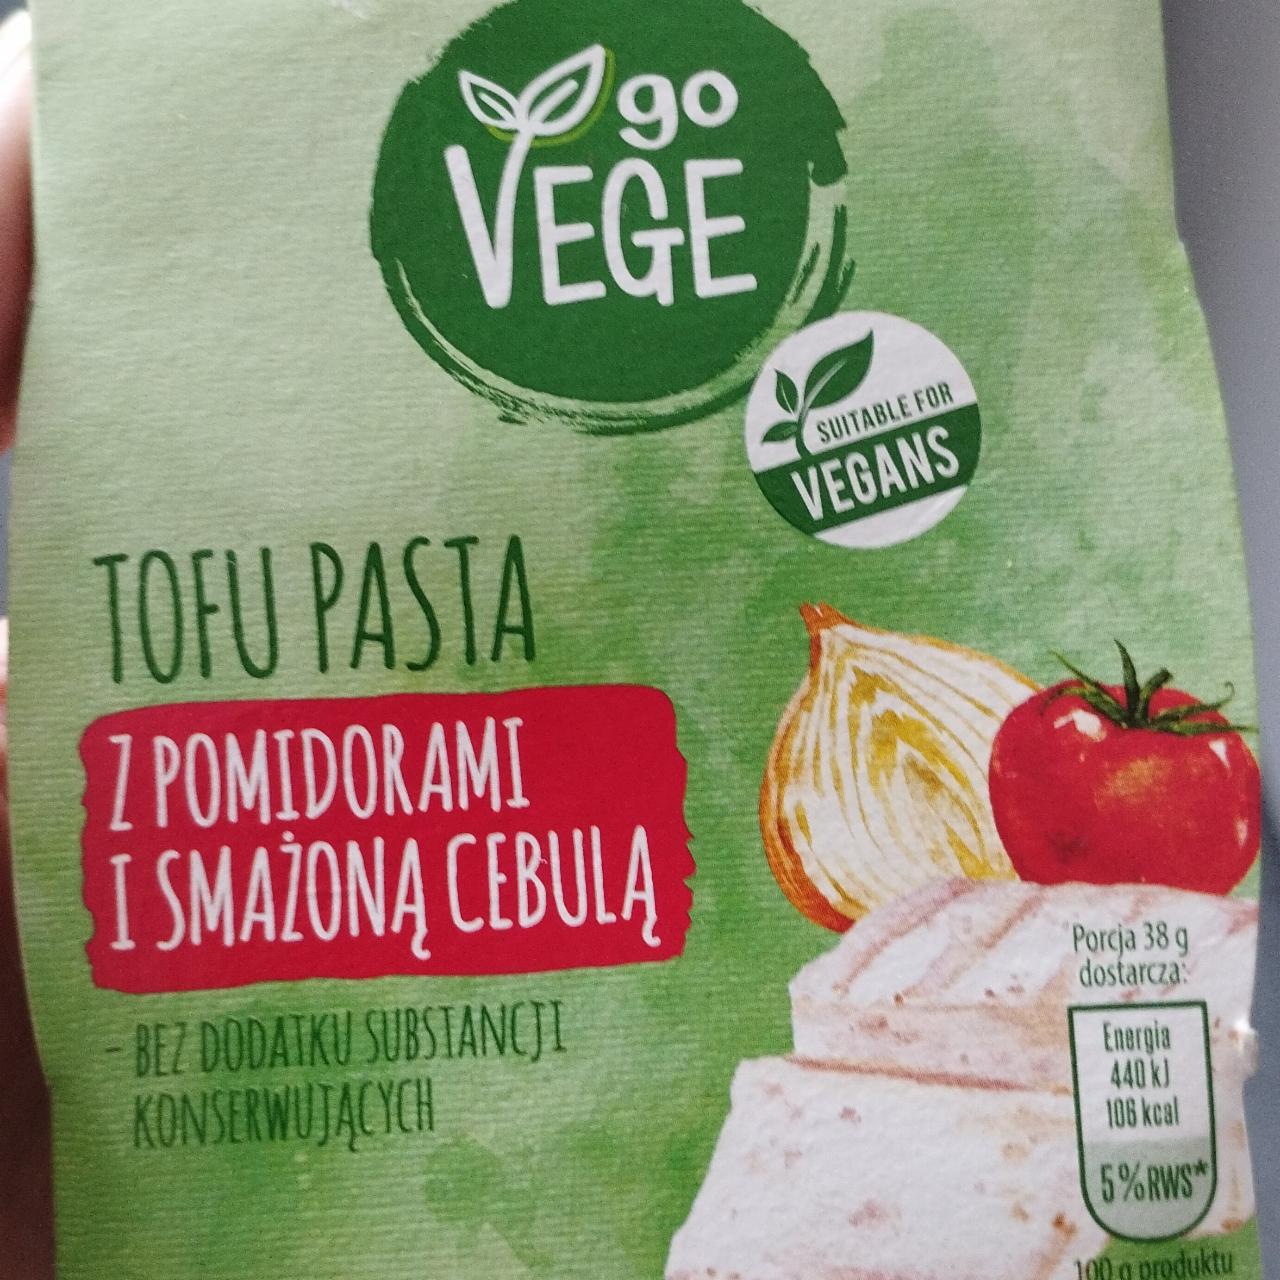 Fotografie - Tofu pasta z pomidorami i smażoną cebulą Go Vege